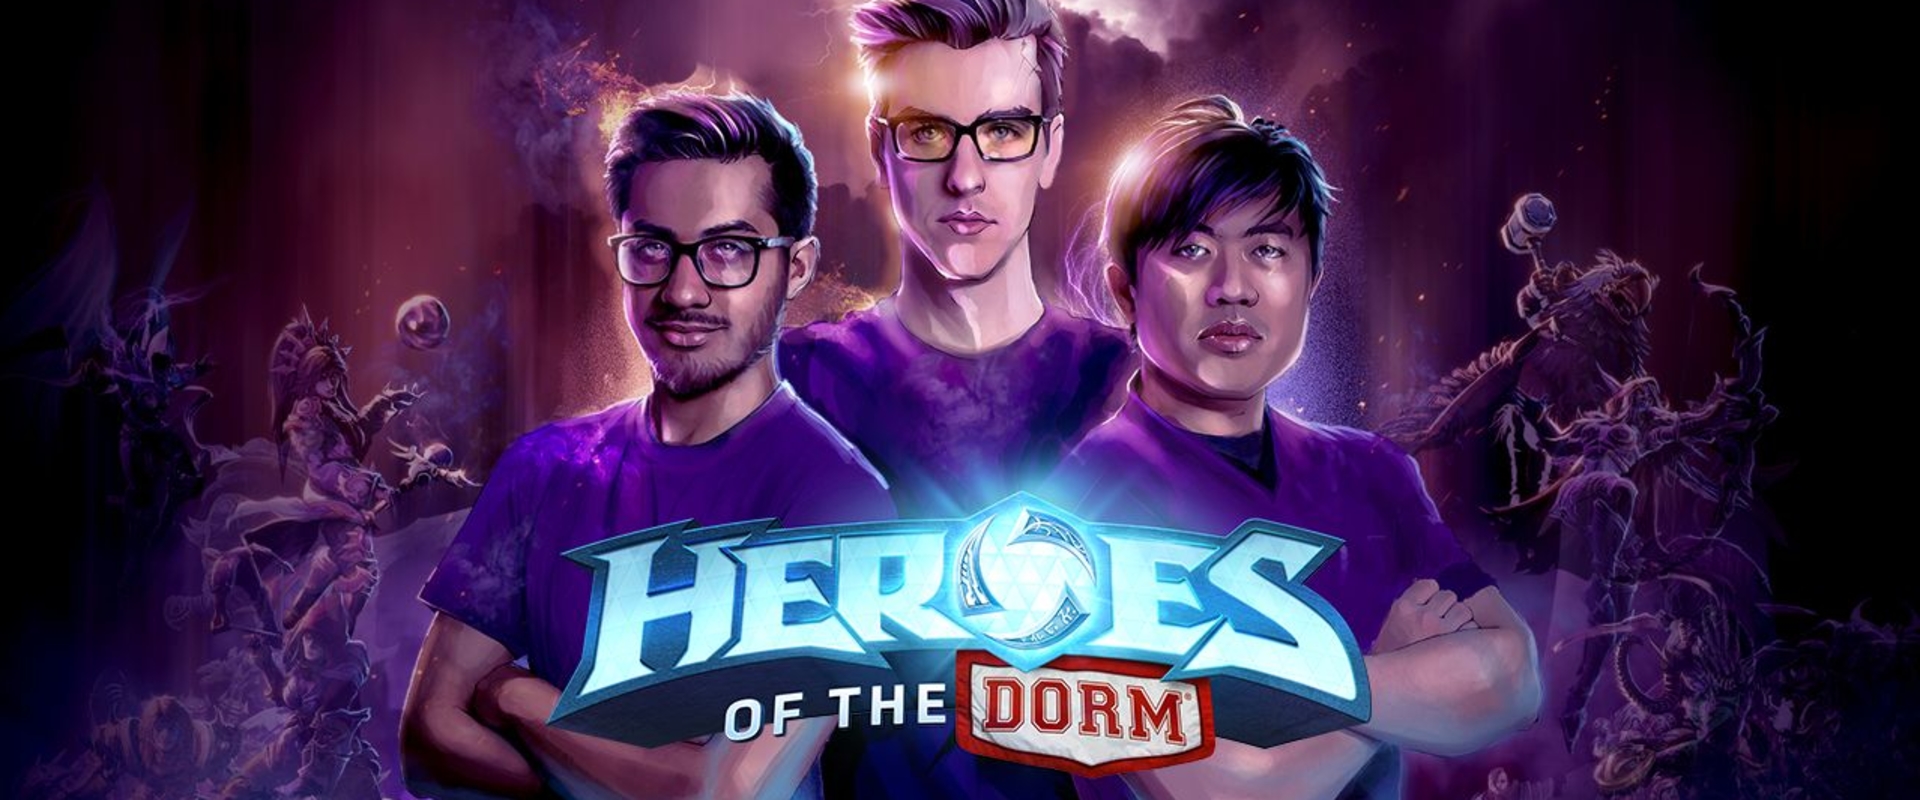 Tippeld meg jól az összes Heroes of the Dorm meccset és a Blizzard hozzád vág 1 millió dollárt